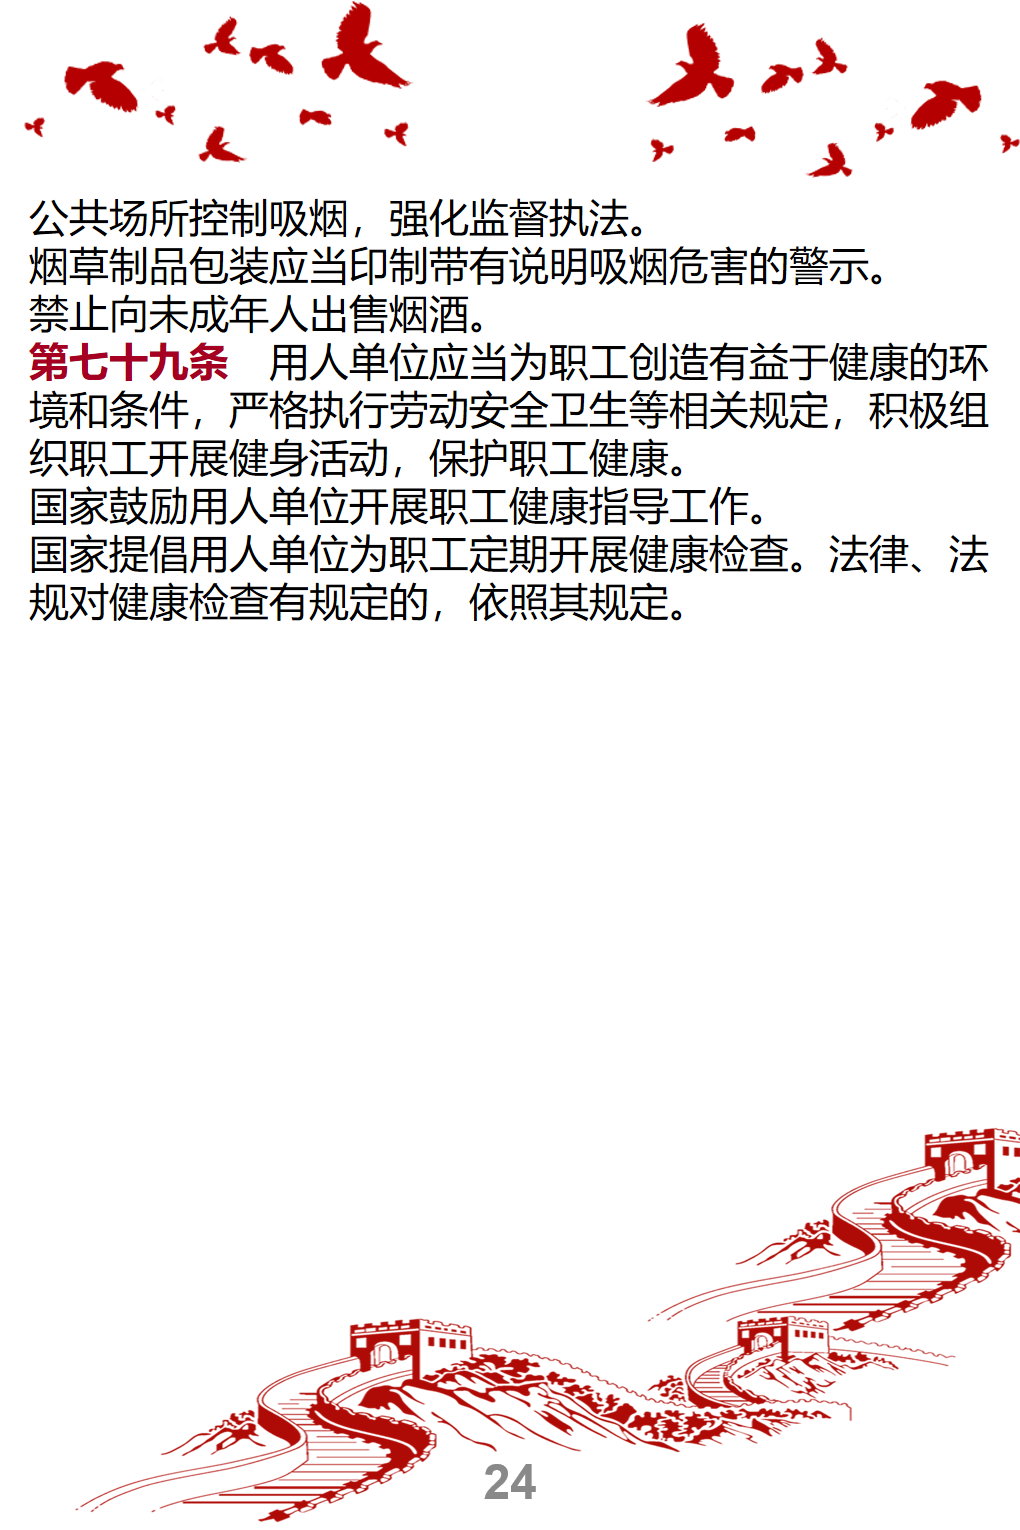 新-中华人民共和国基本医疗卫生与健康促进法--宣传册_24